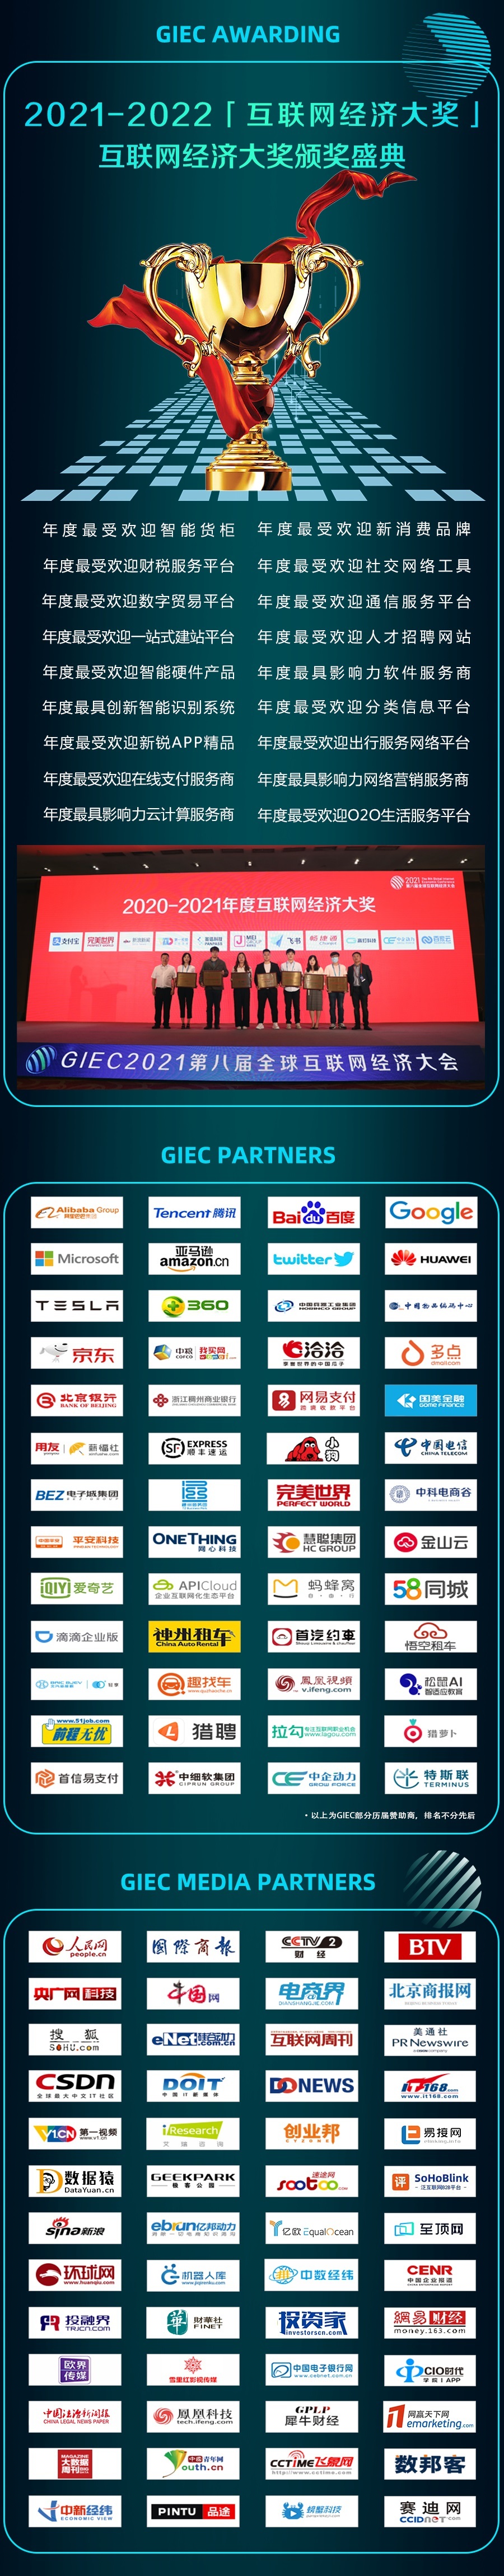 2022GIEC第九屆全球互聯網經濟大會